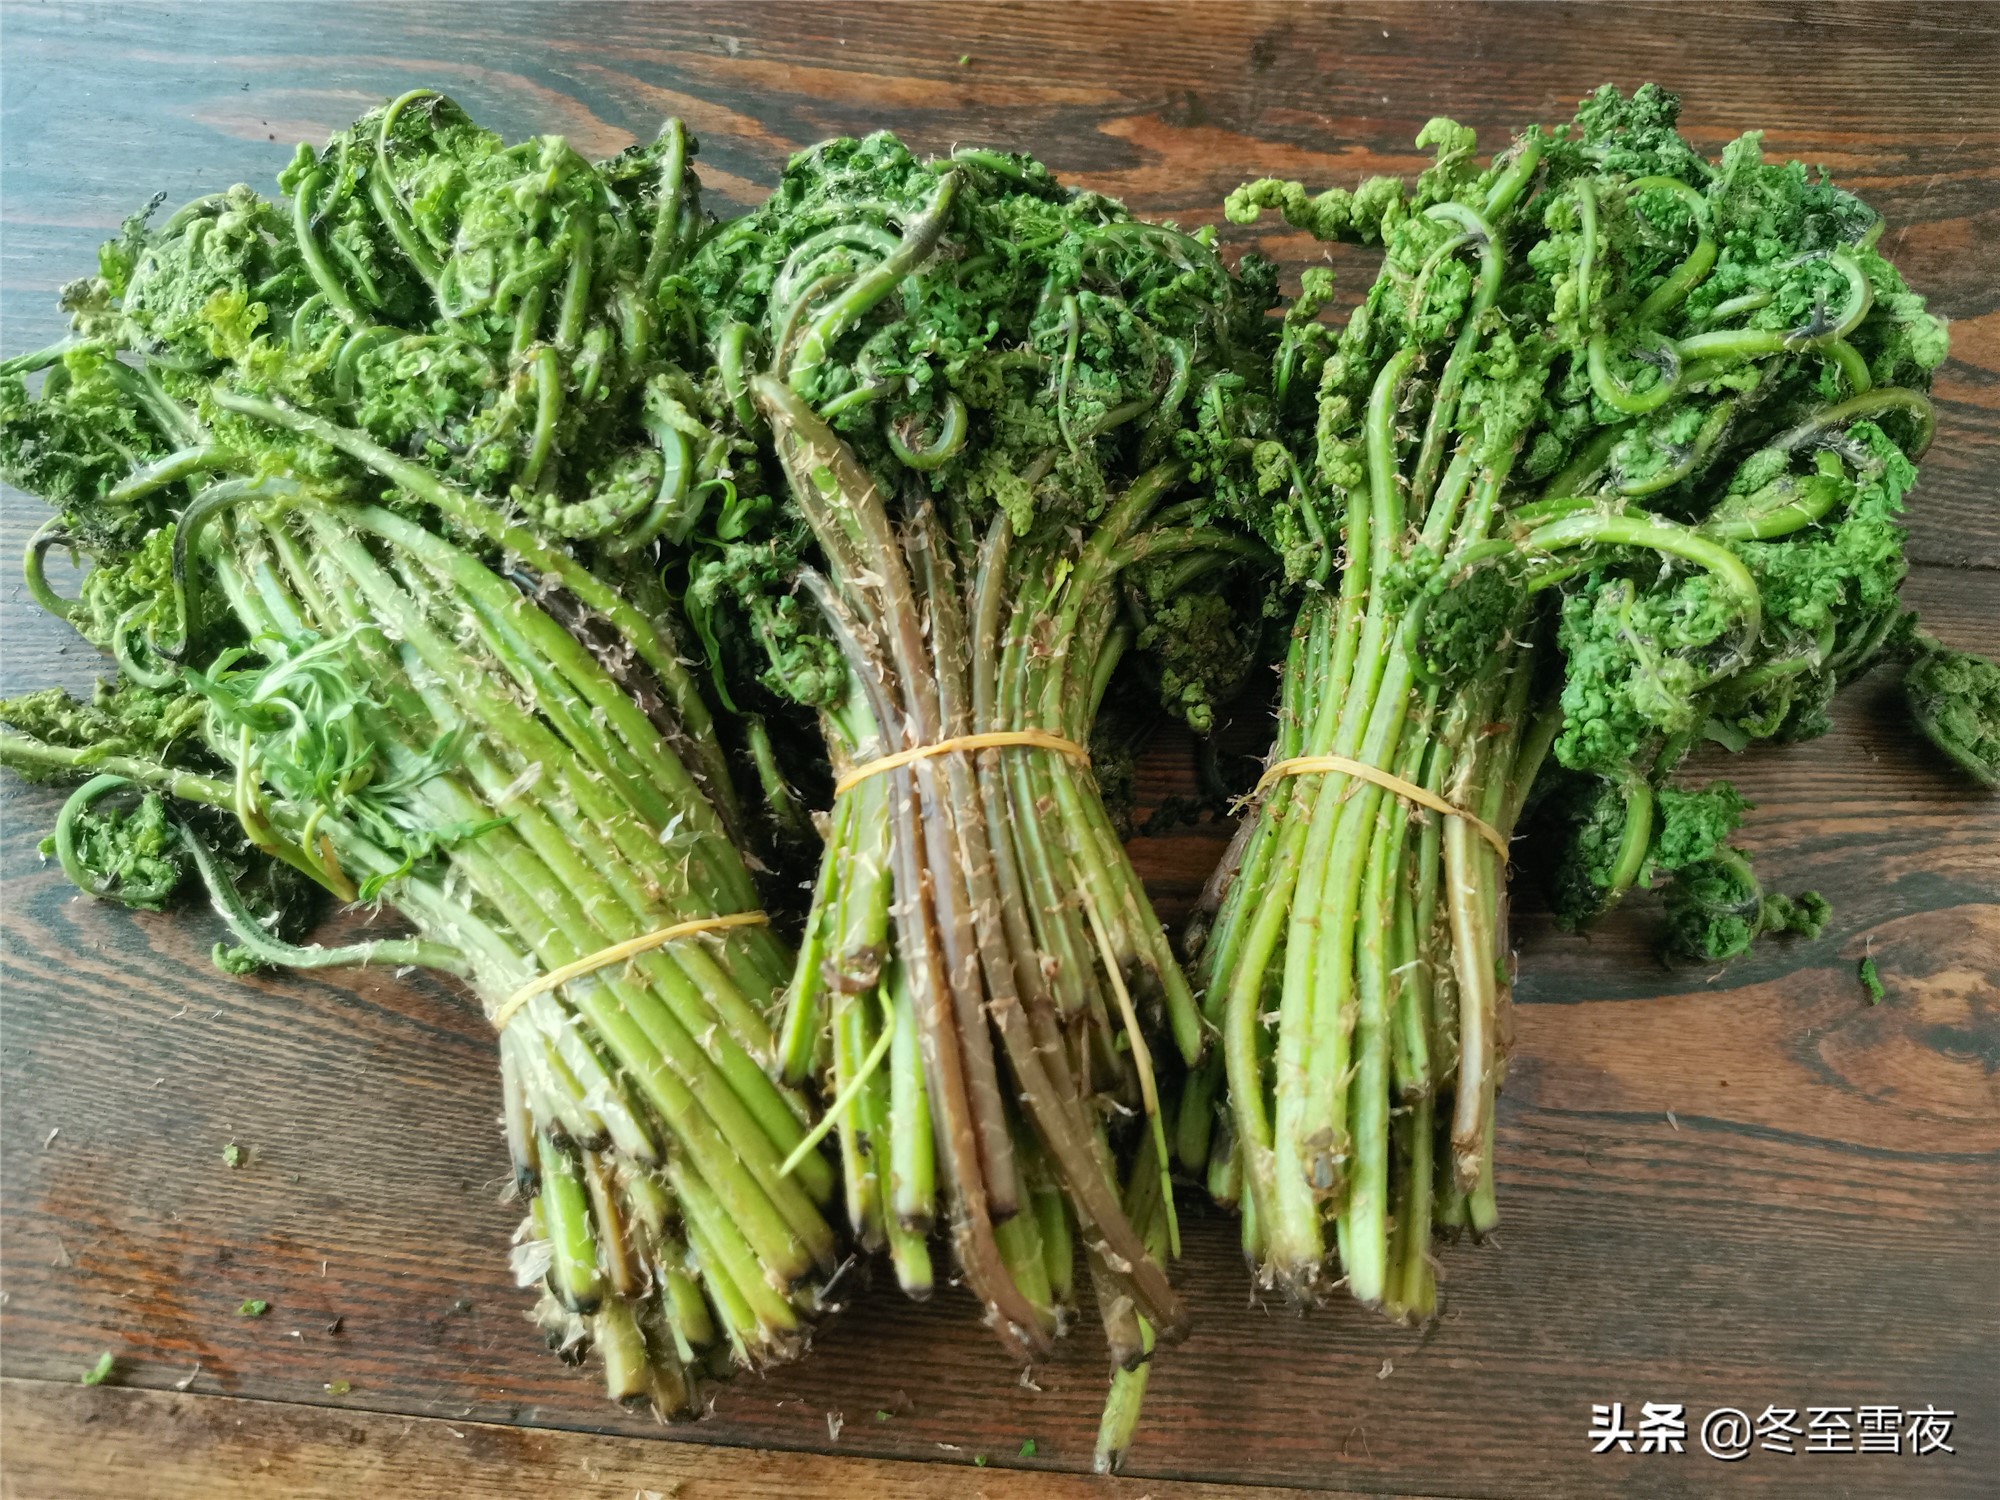 东北农村,常吃的16种山野菜,现在城市里很少见,你吃过几种?